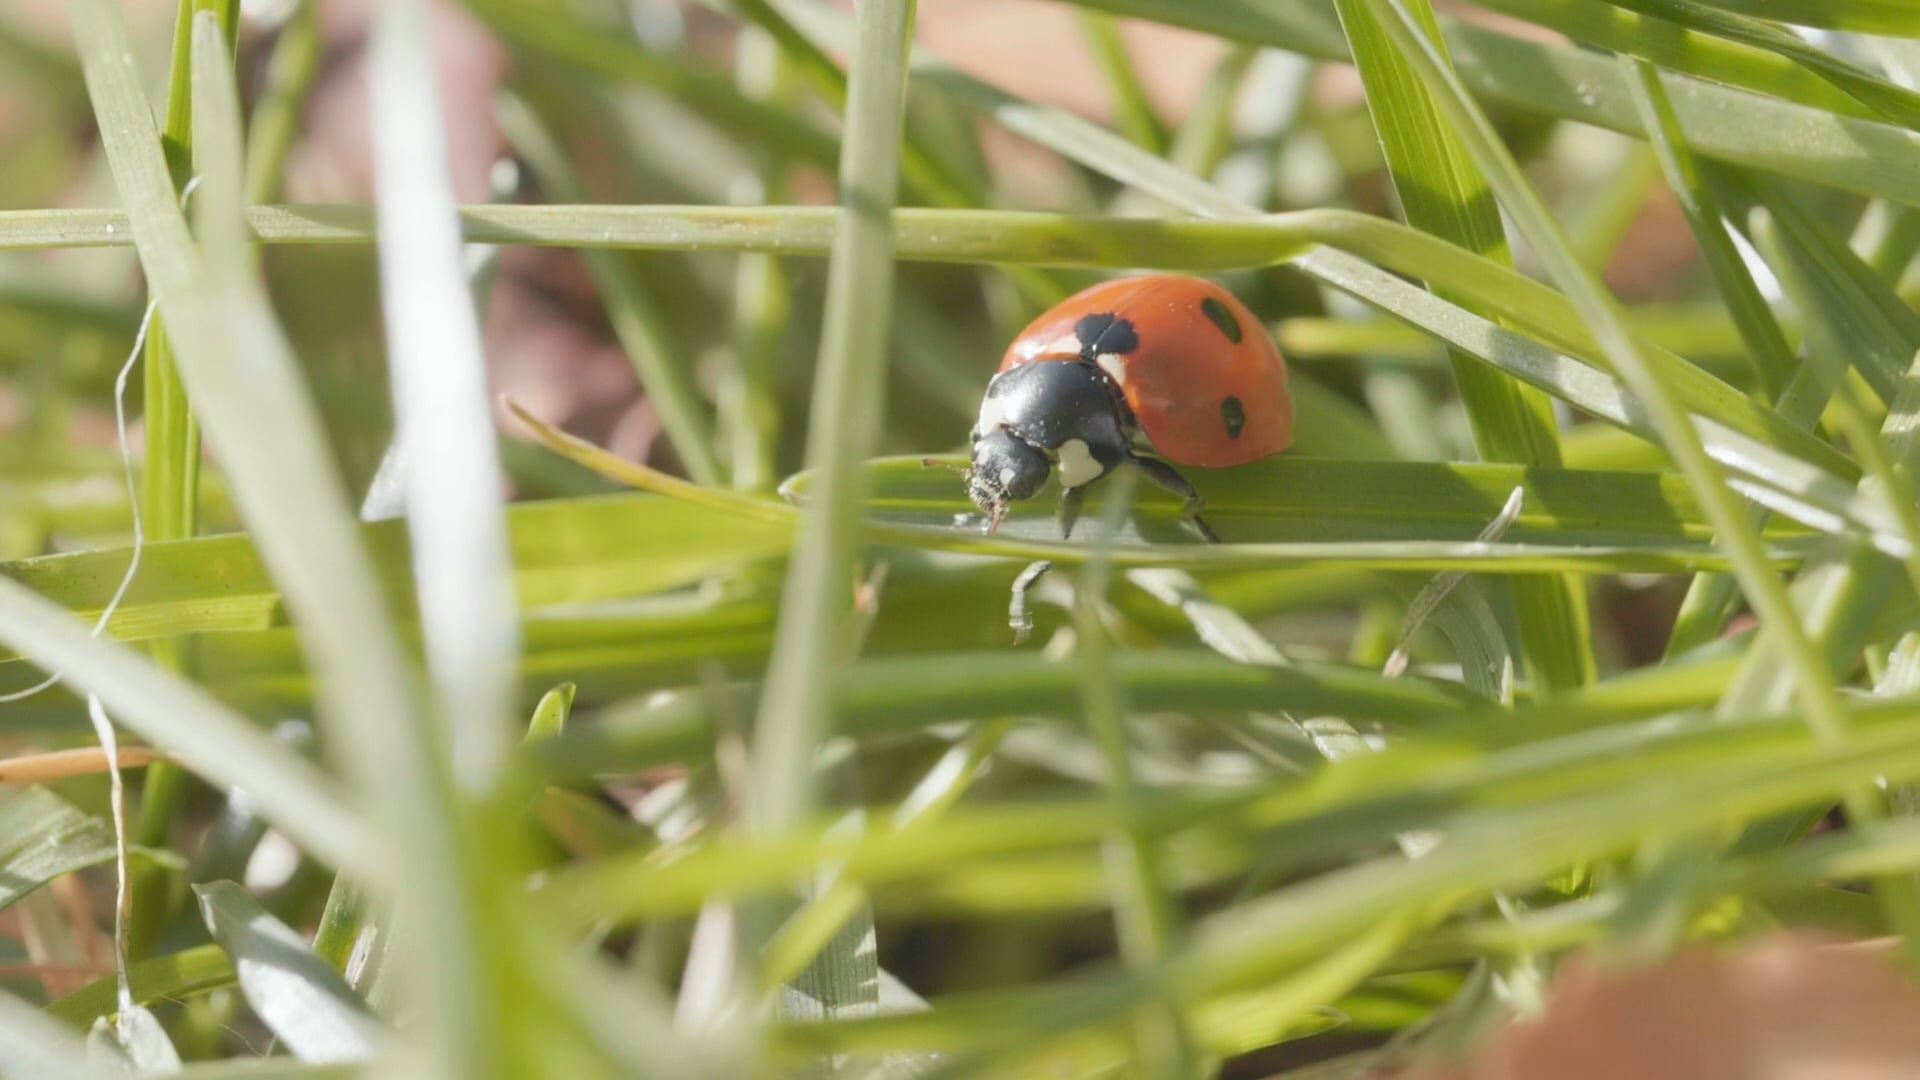 A ladybug in slowmotion